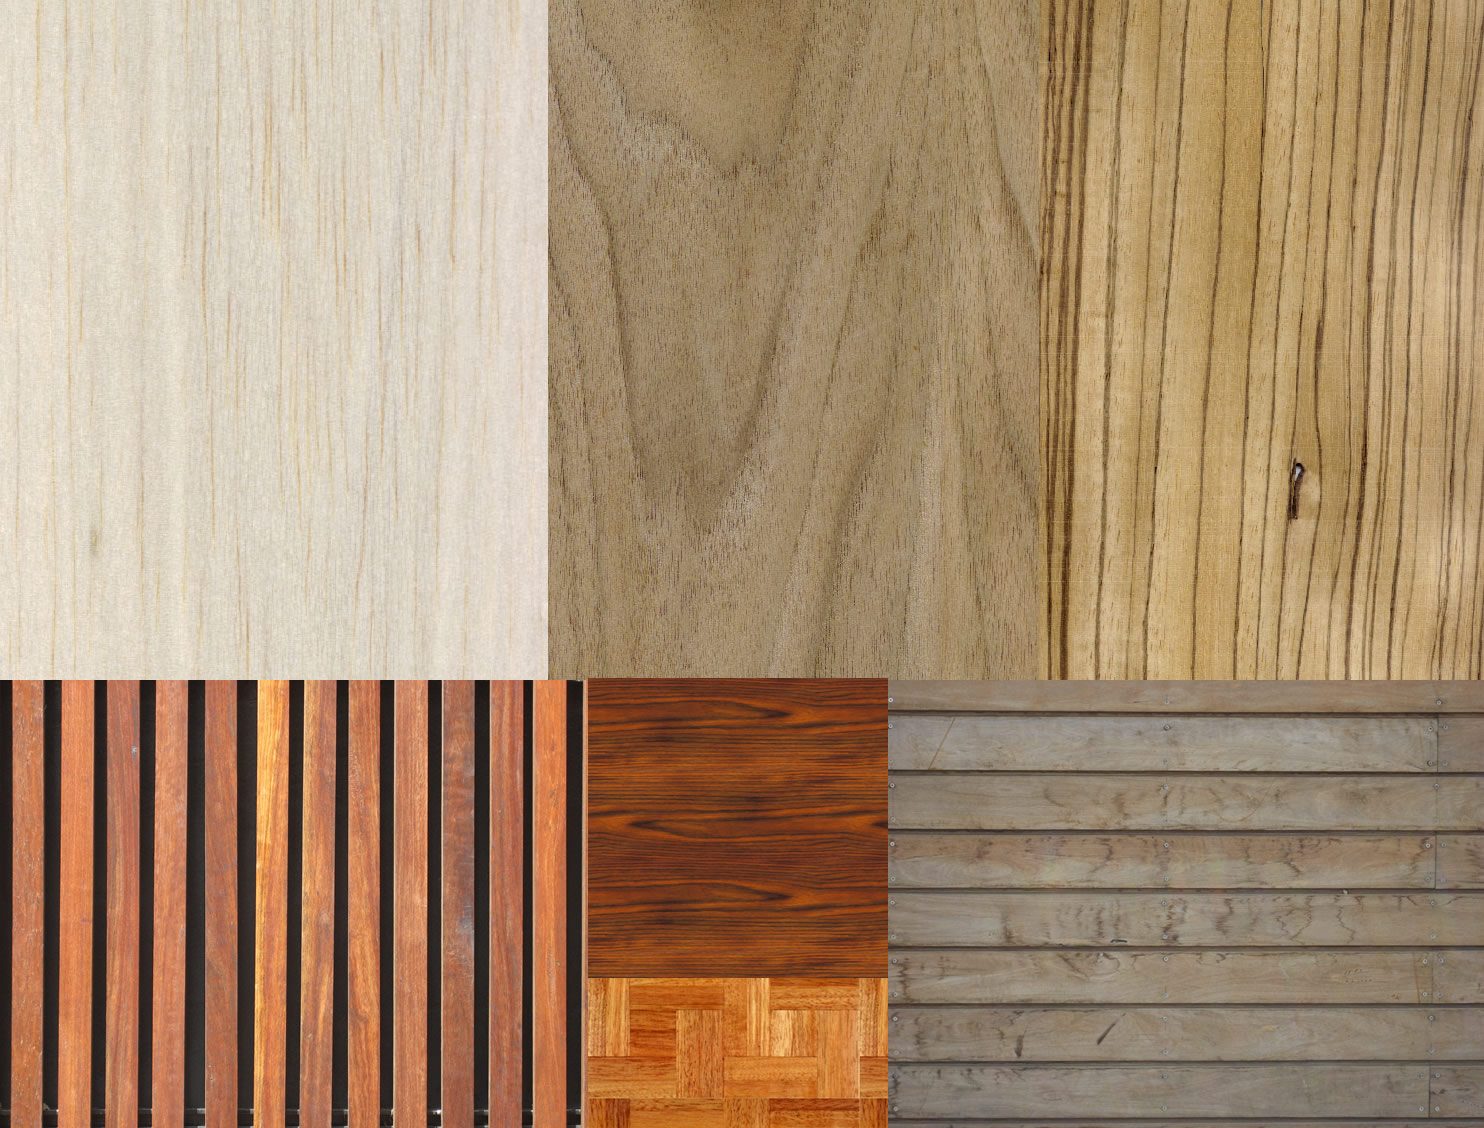 Textura madera